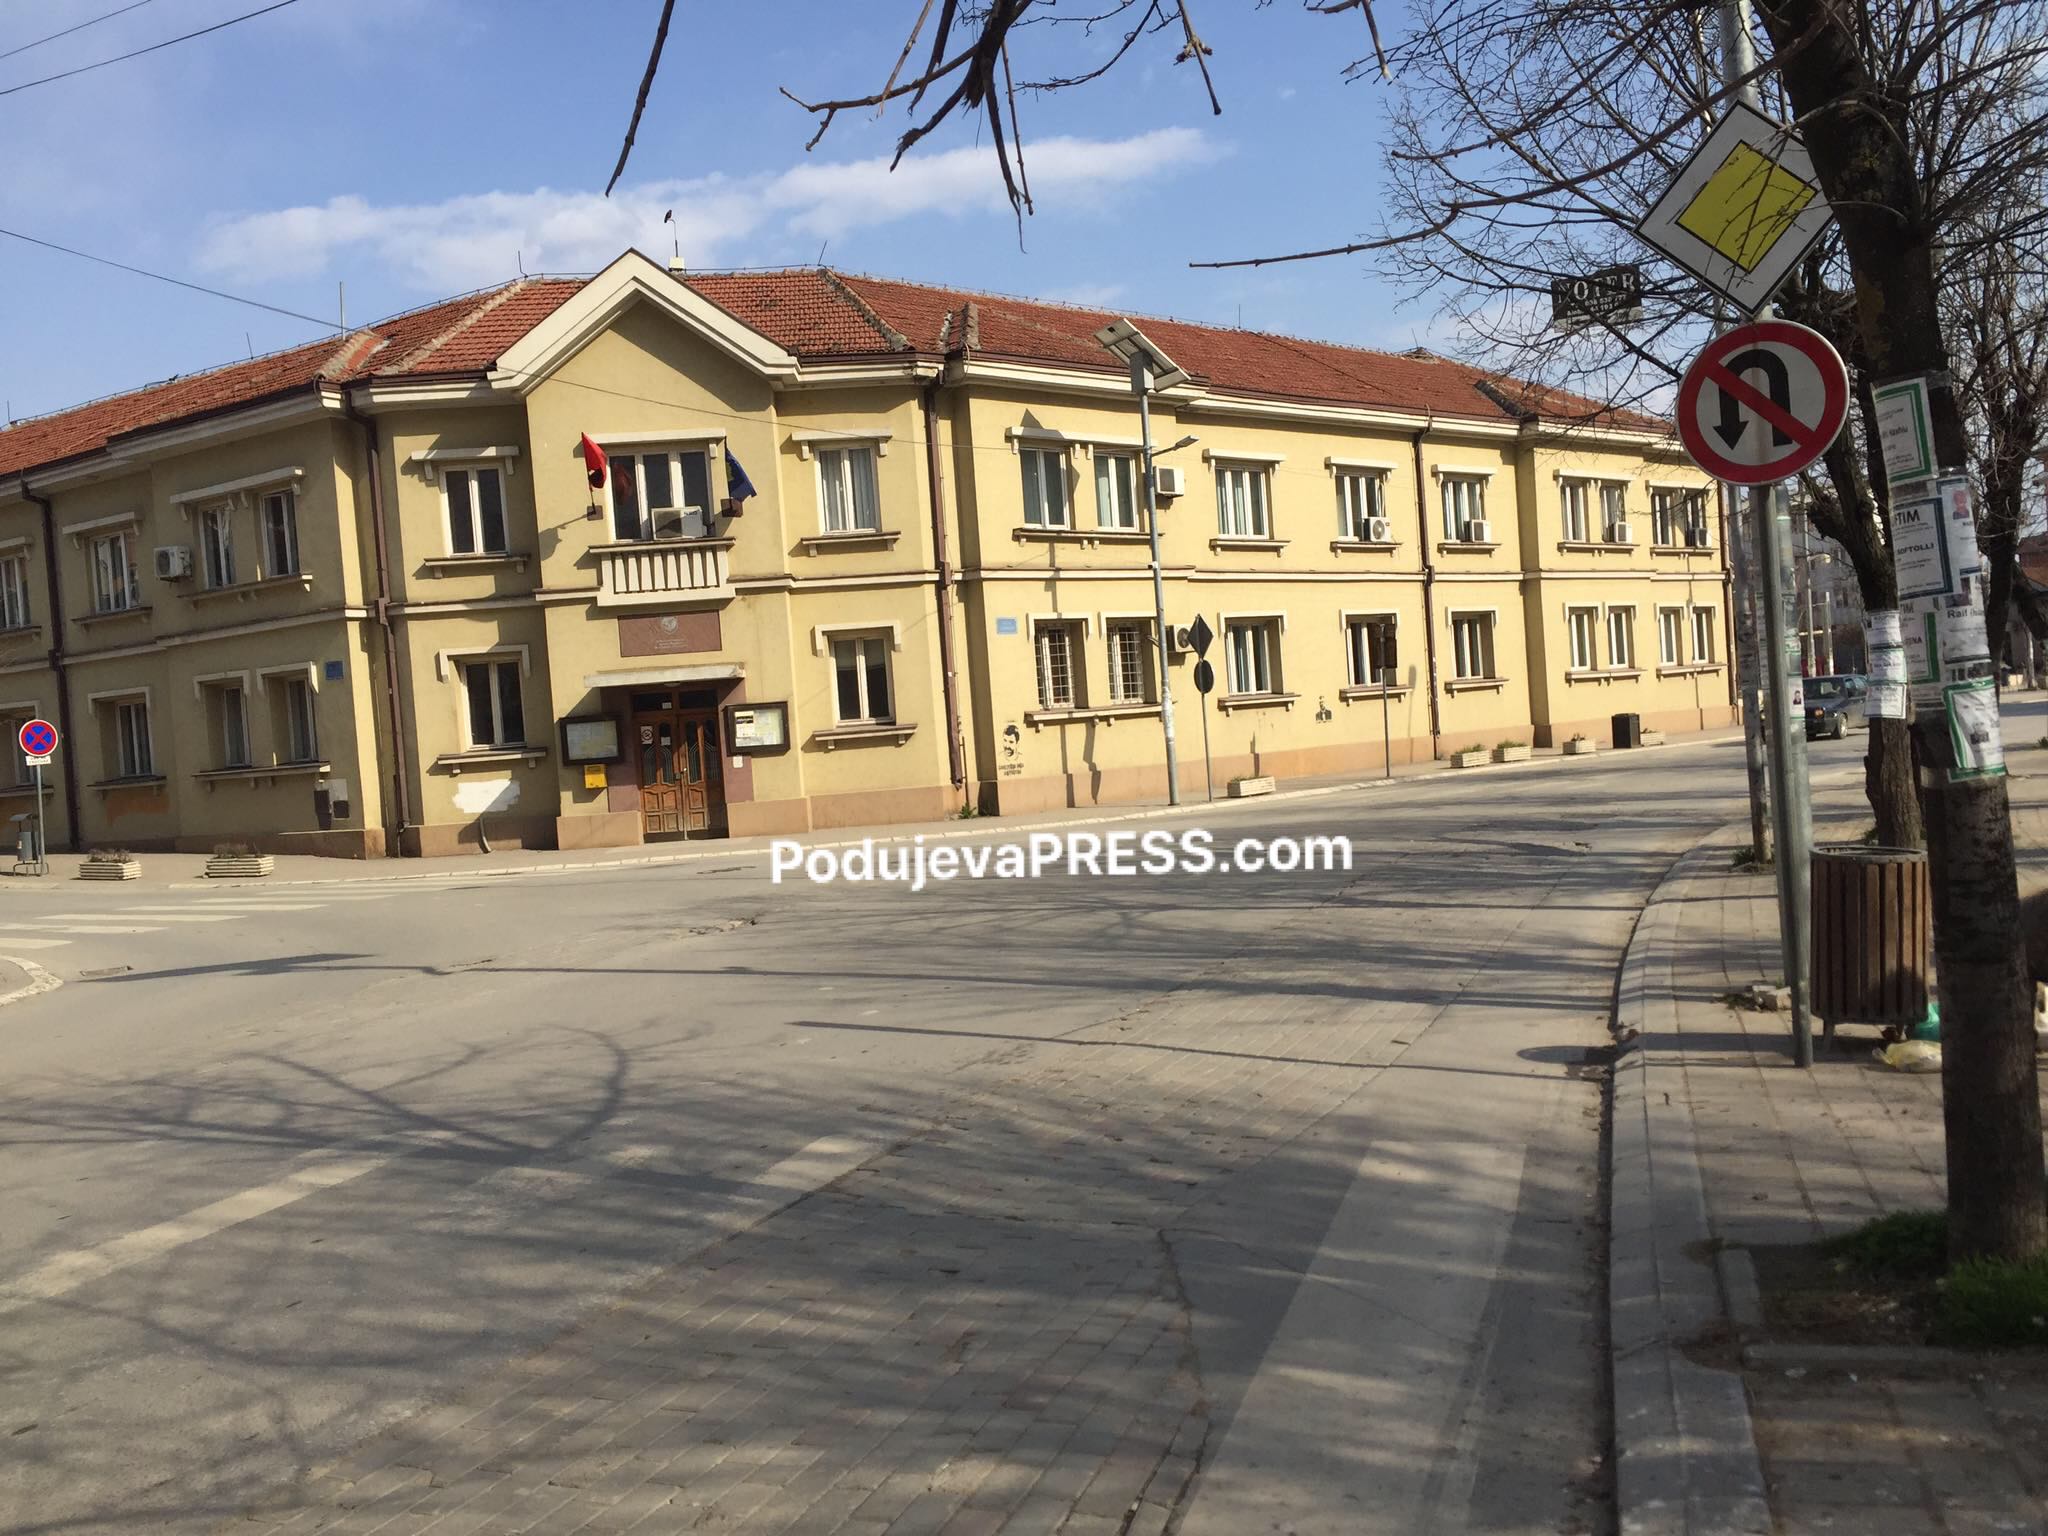  Gruaja nga Podujeva e bën për spital familjaren e saj